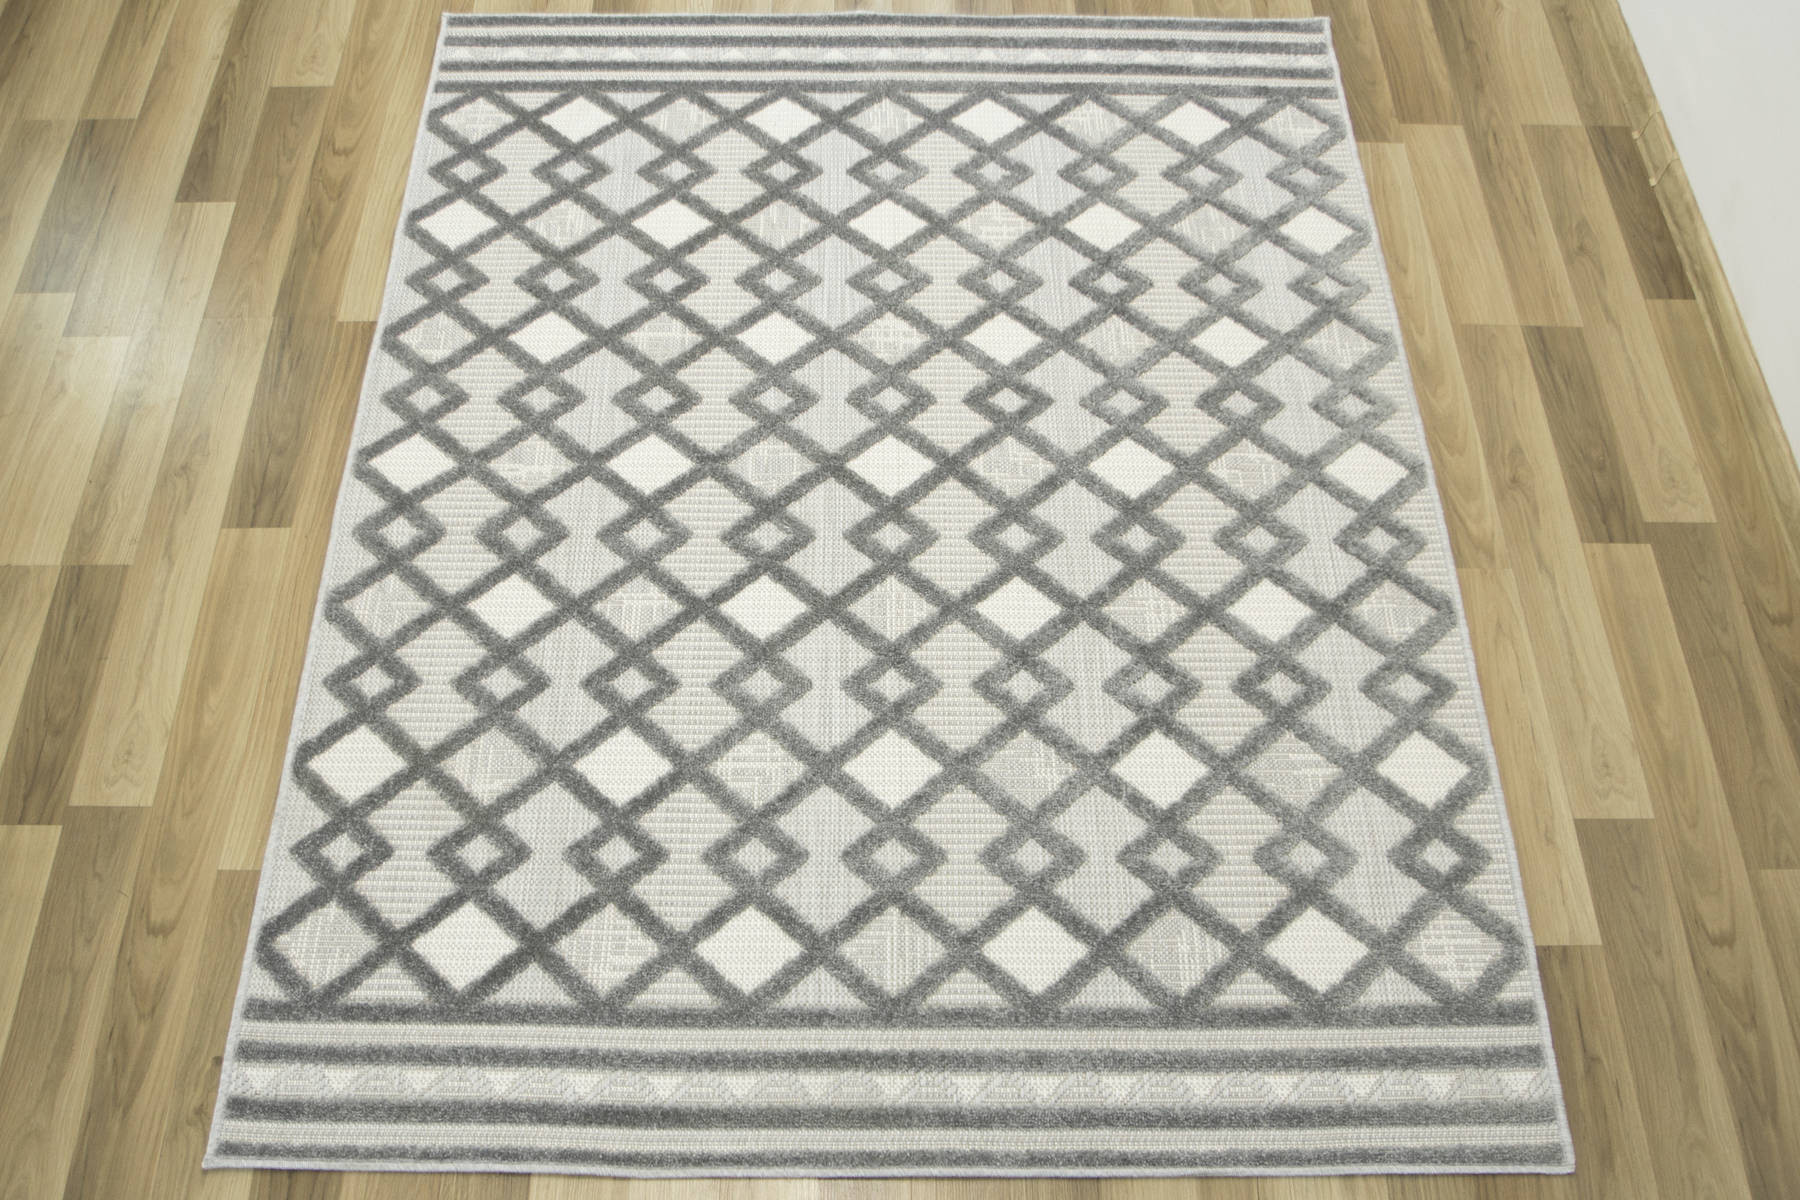 Šňůrkový koberec Stella D418A - Romby Aztec šedý / stříbrný